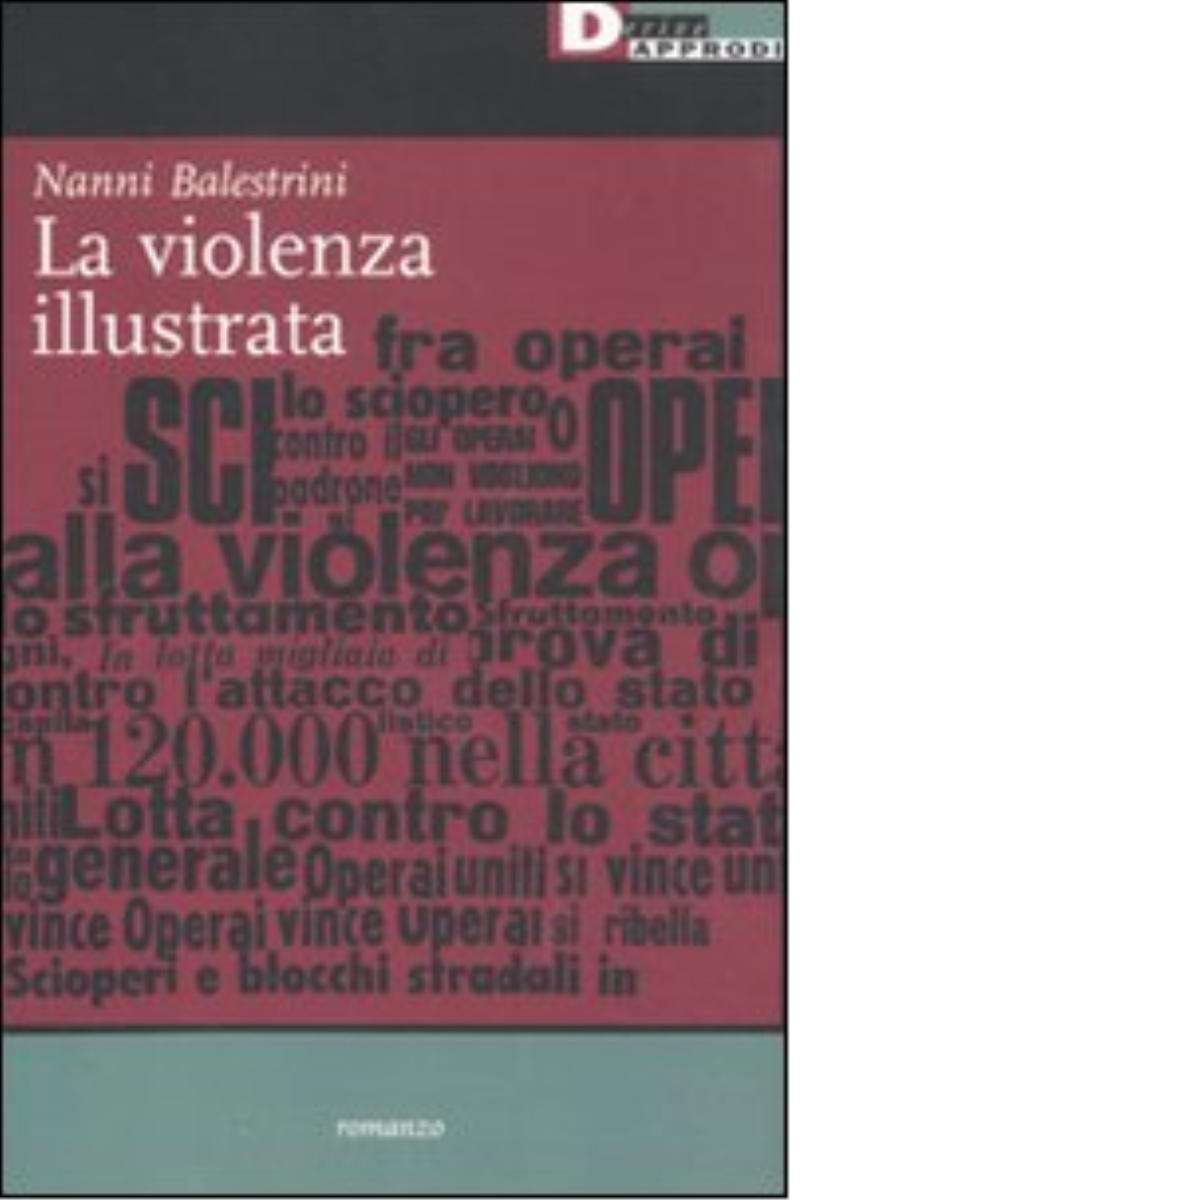 LA VIOLENZA ILLUSTRATA di NANNI BALESTRINI - DeriveApprodi editoree, 2011